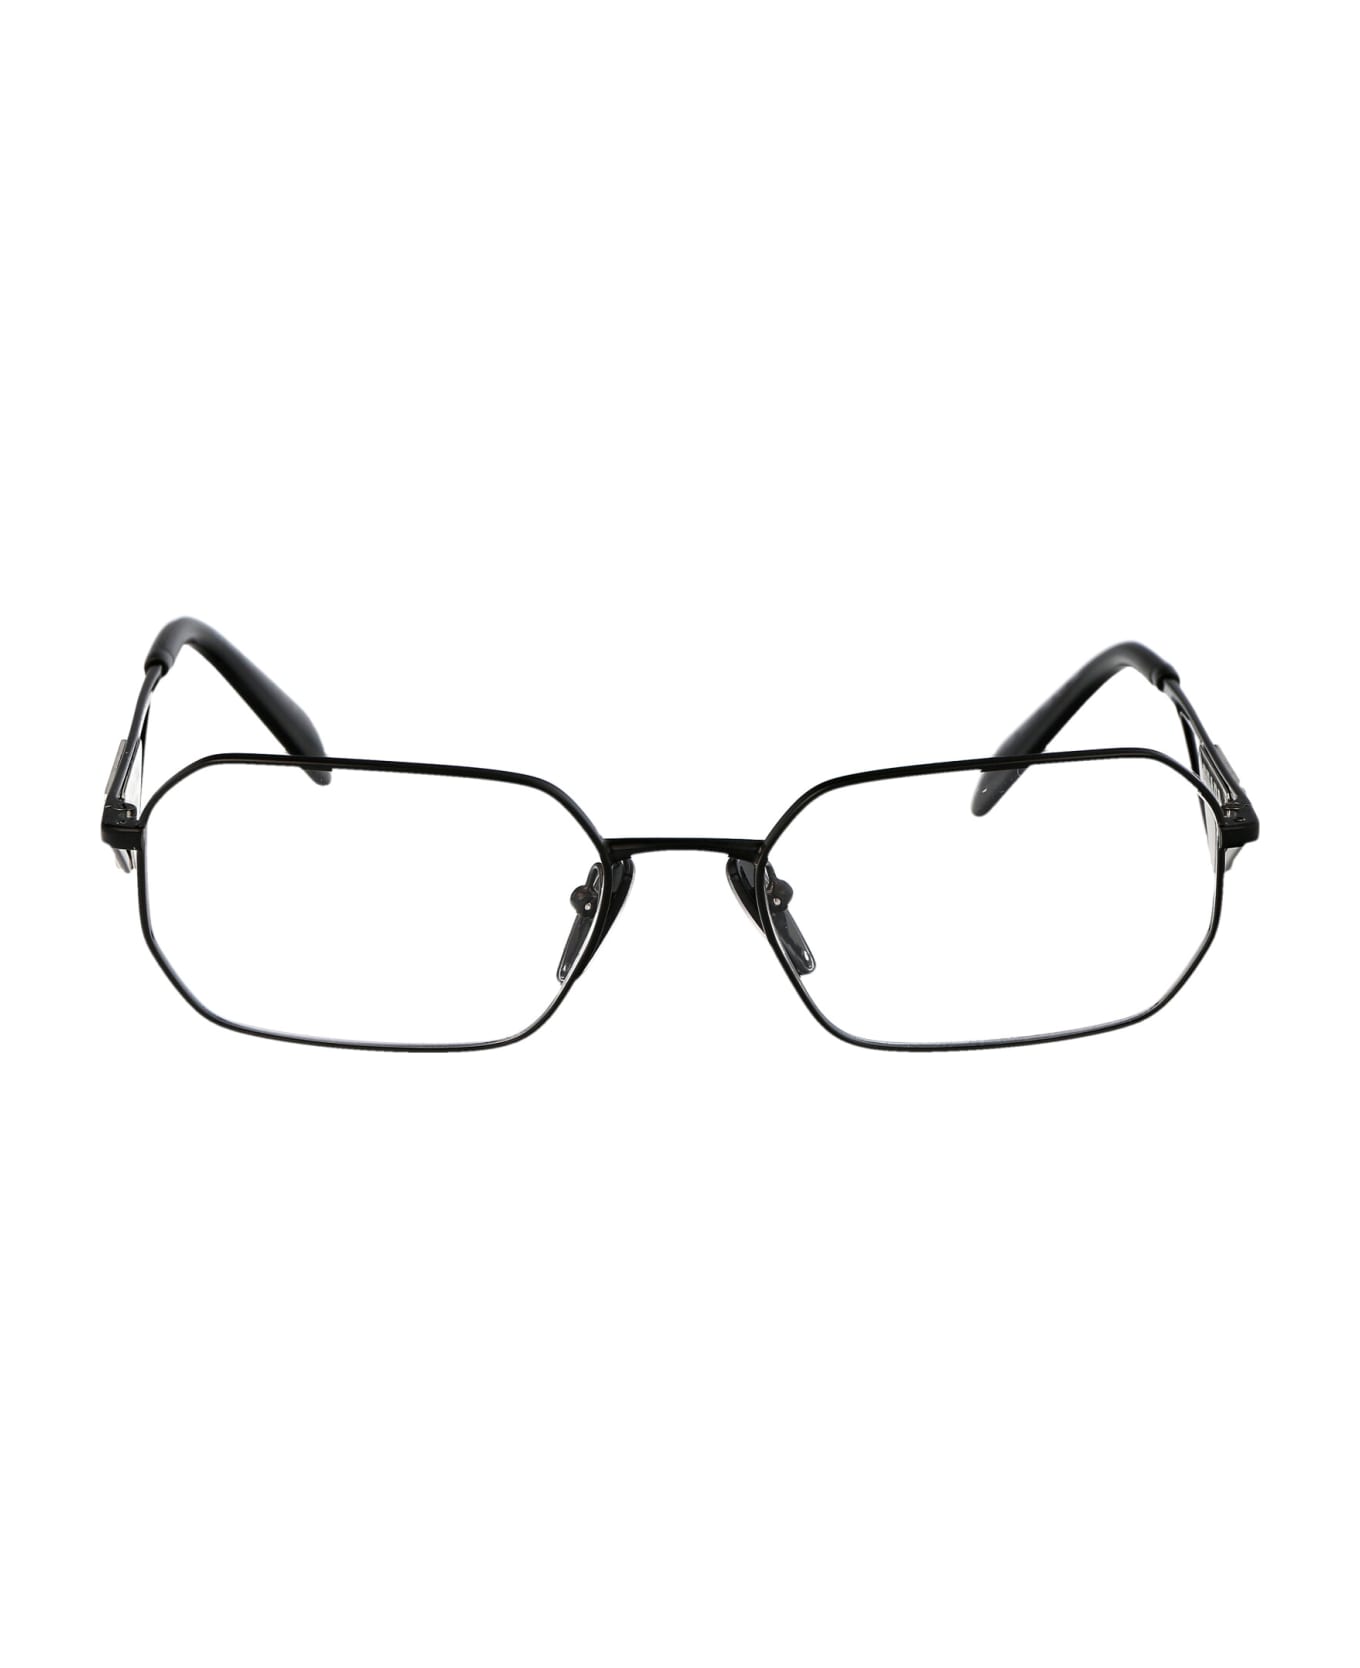 Prada Eyewear 0pr A53v Glasses - 1AB1O1 BLACK アイウェア